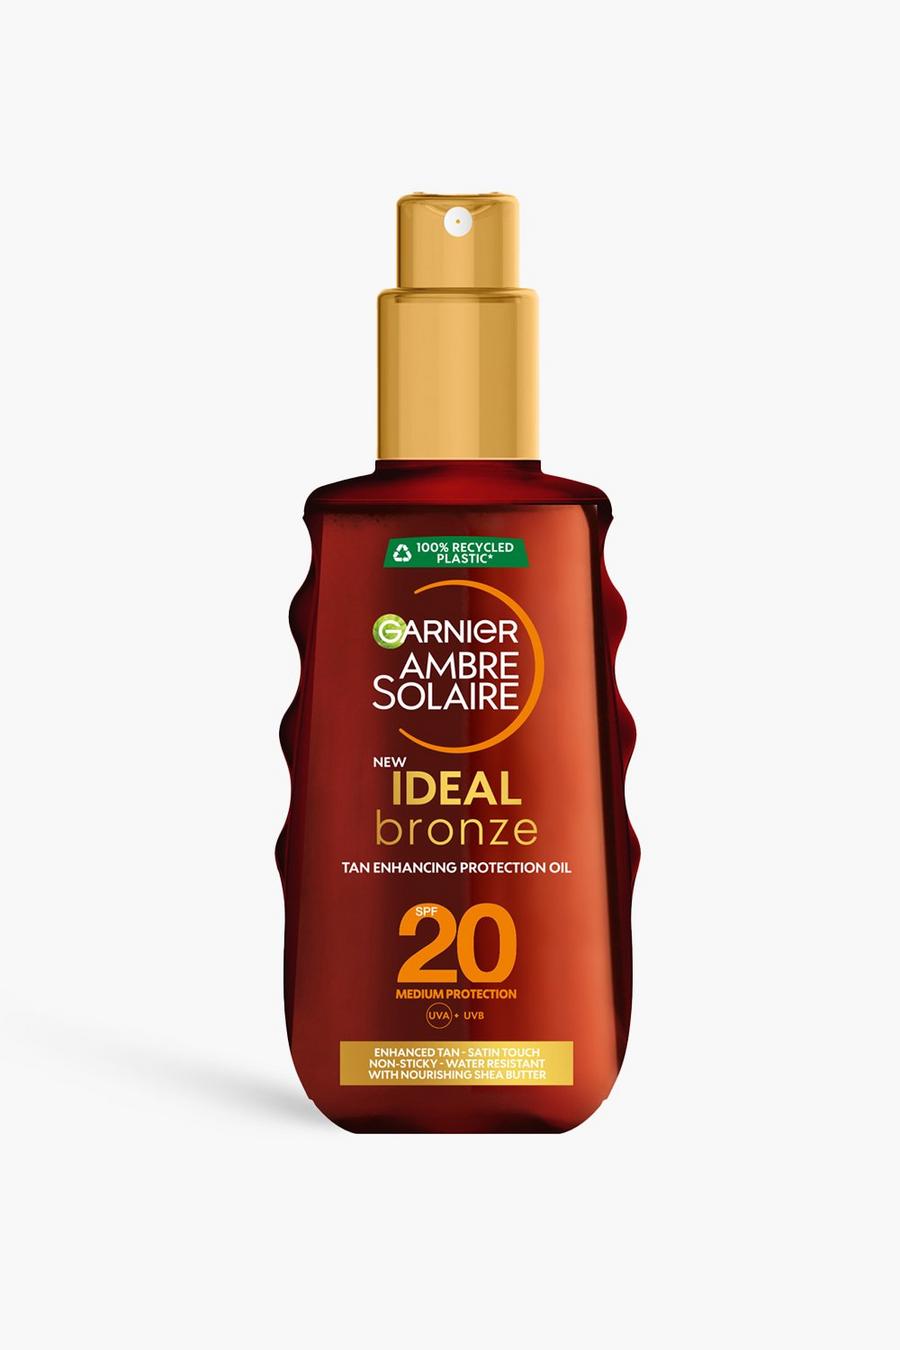 Garnier Ambre Solaire Ideal Bronze Protective Oil Sun Cream Spray SPF20, UVA & UVB Protection, 150ml (SAVE 32%)